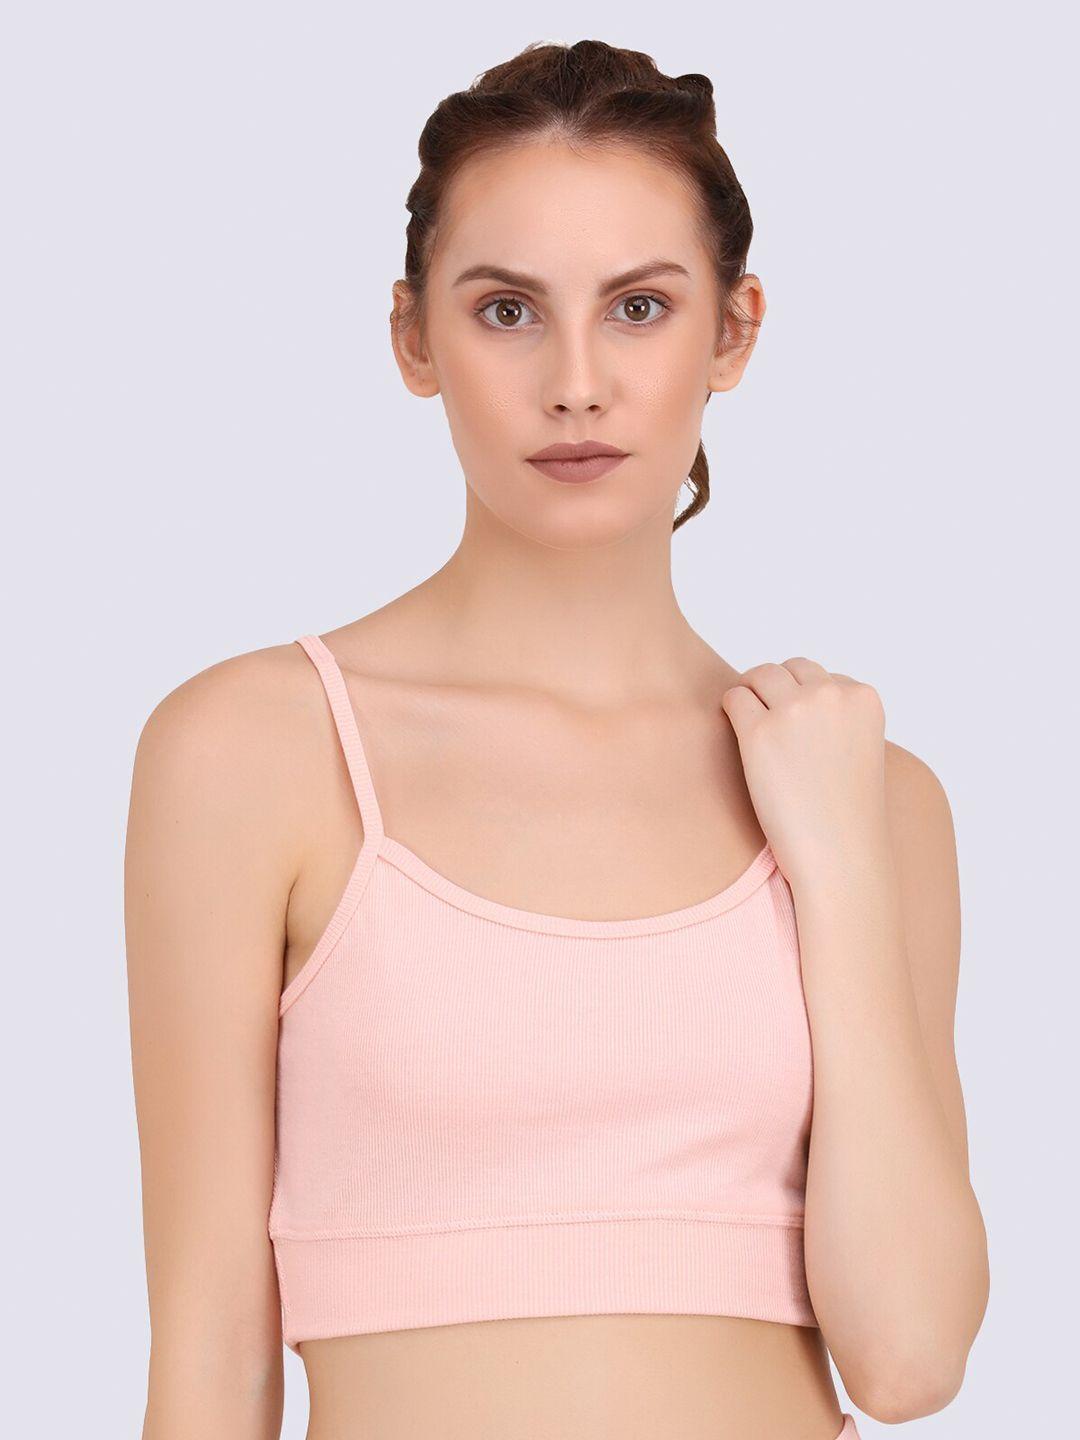 everdion peach-coloured solid shoulder straps cotton bralette crop top